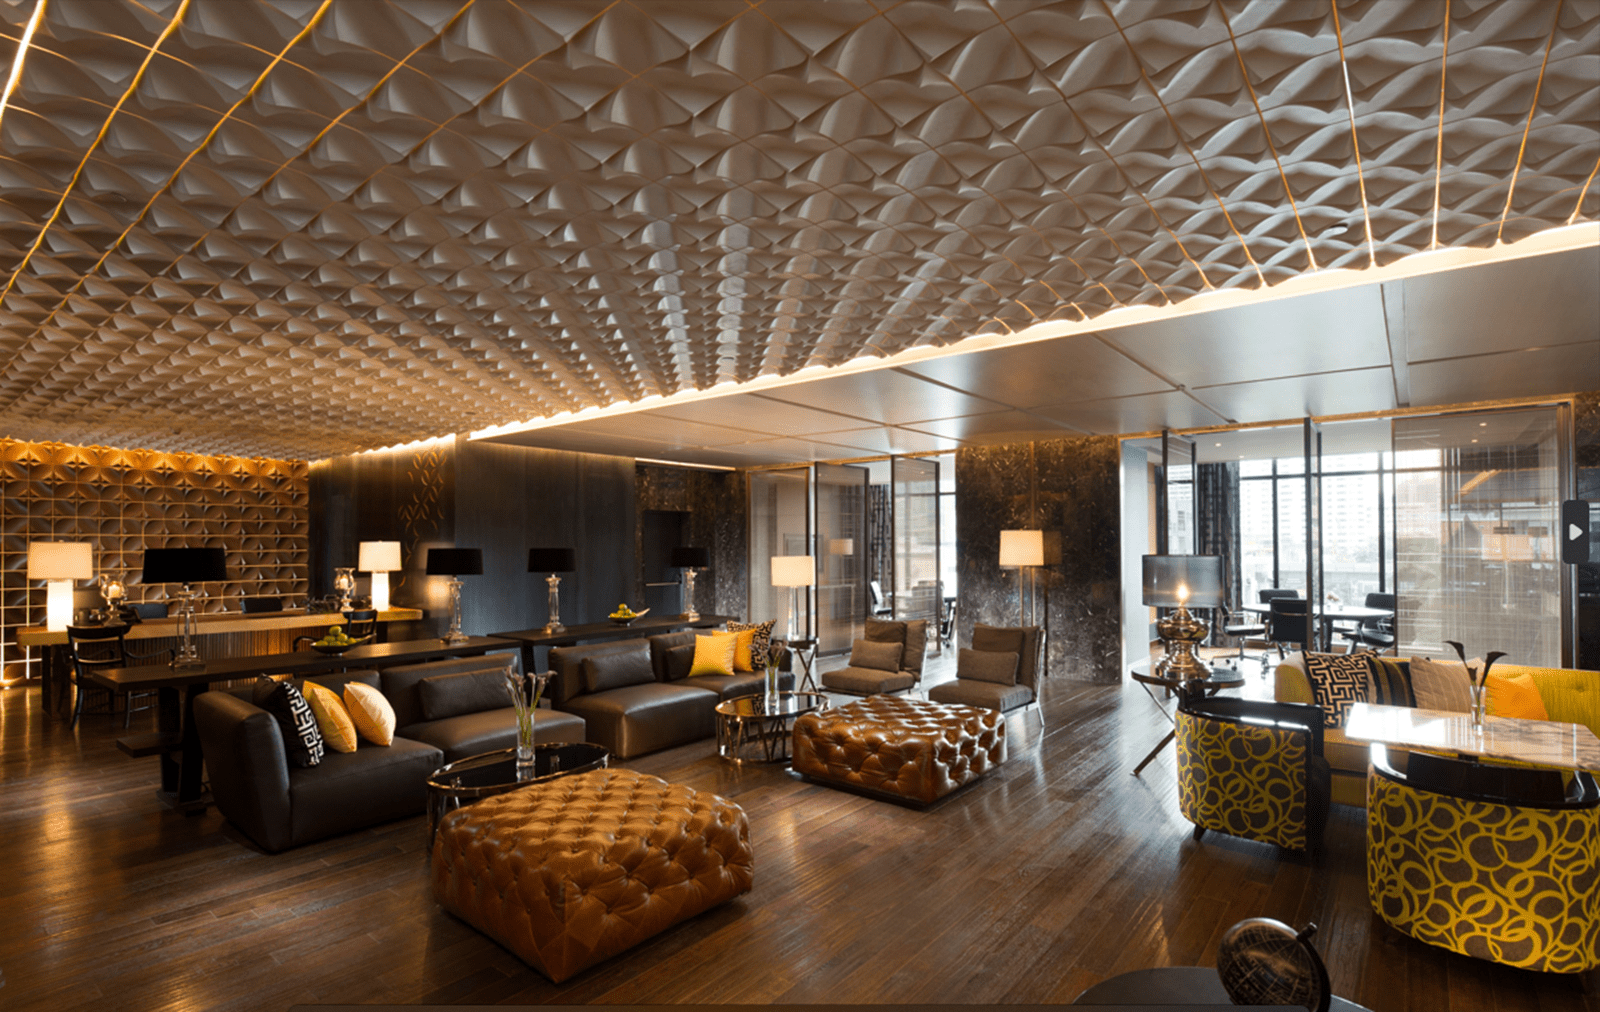 Hilton Sukhumvit Bangkok Executive Club Lounge Overview